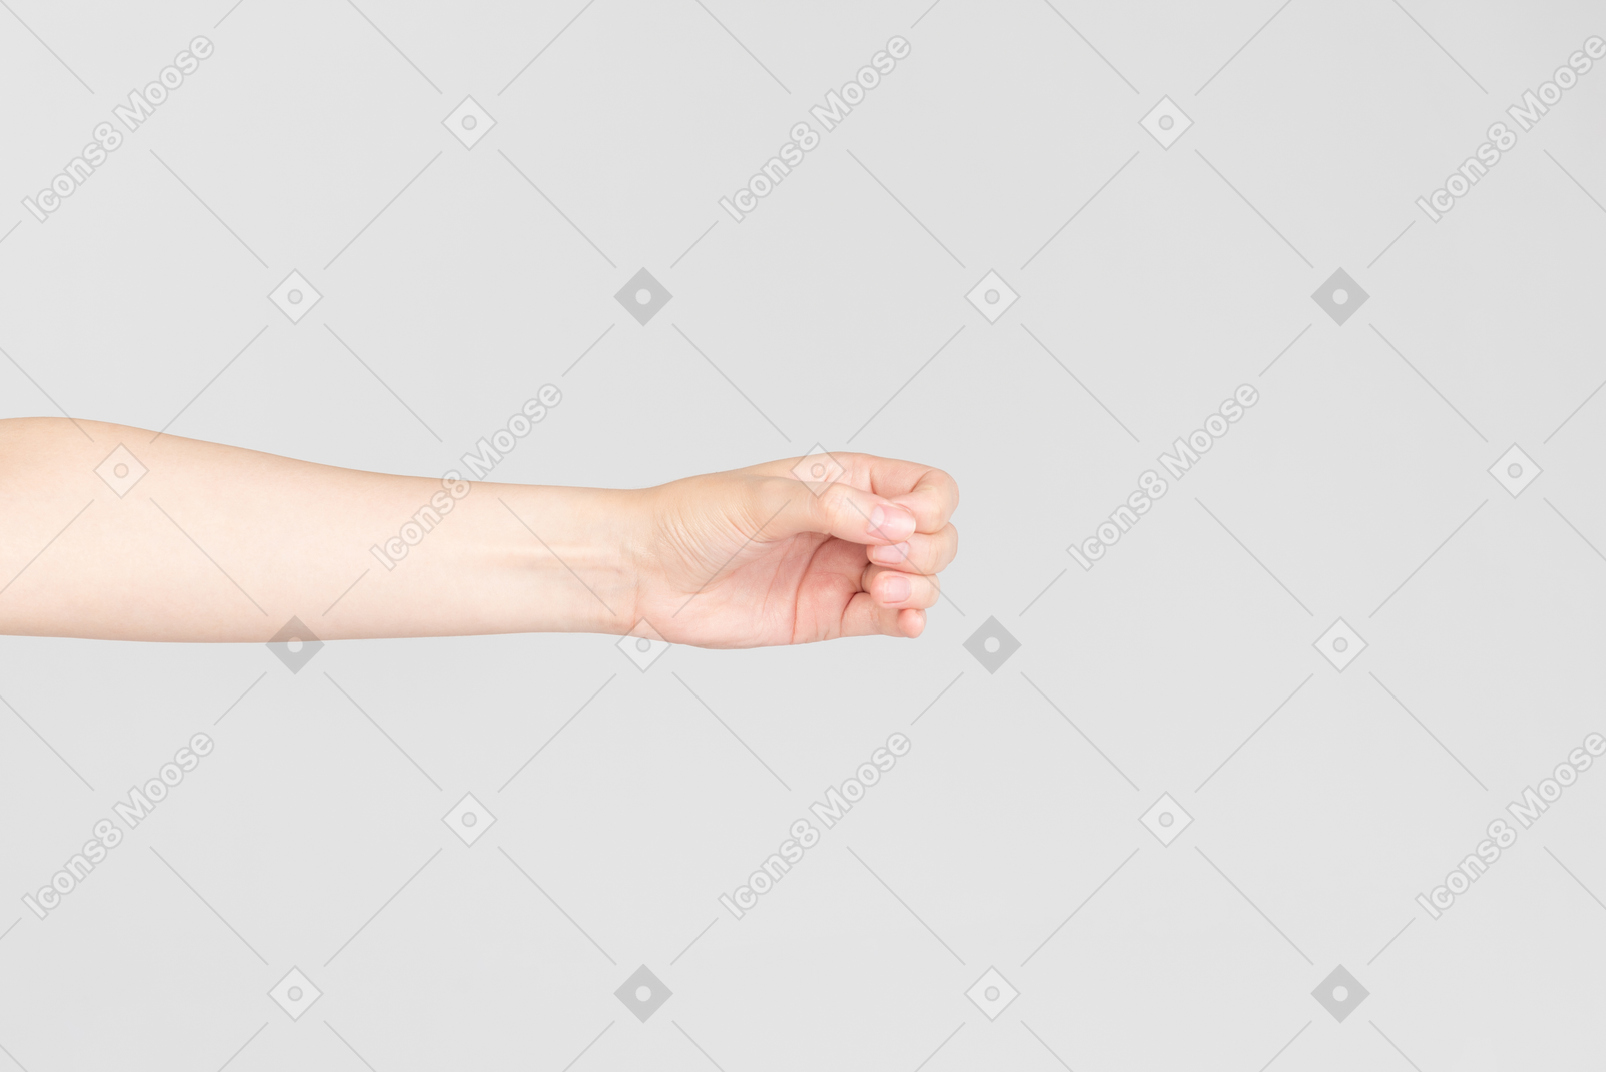 Olhar lateral da mão feminina, fazendo um círculo com uma mão